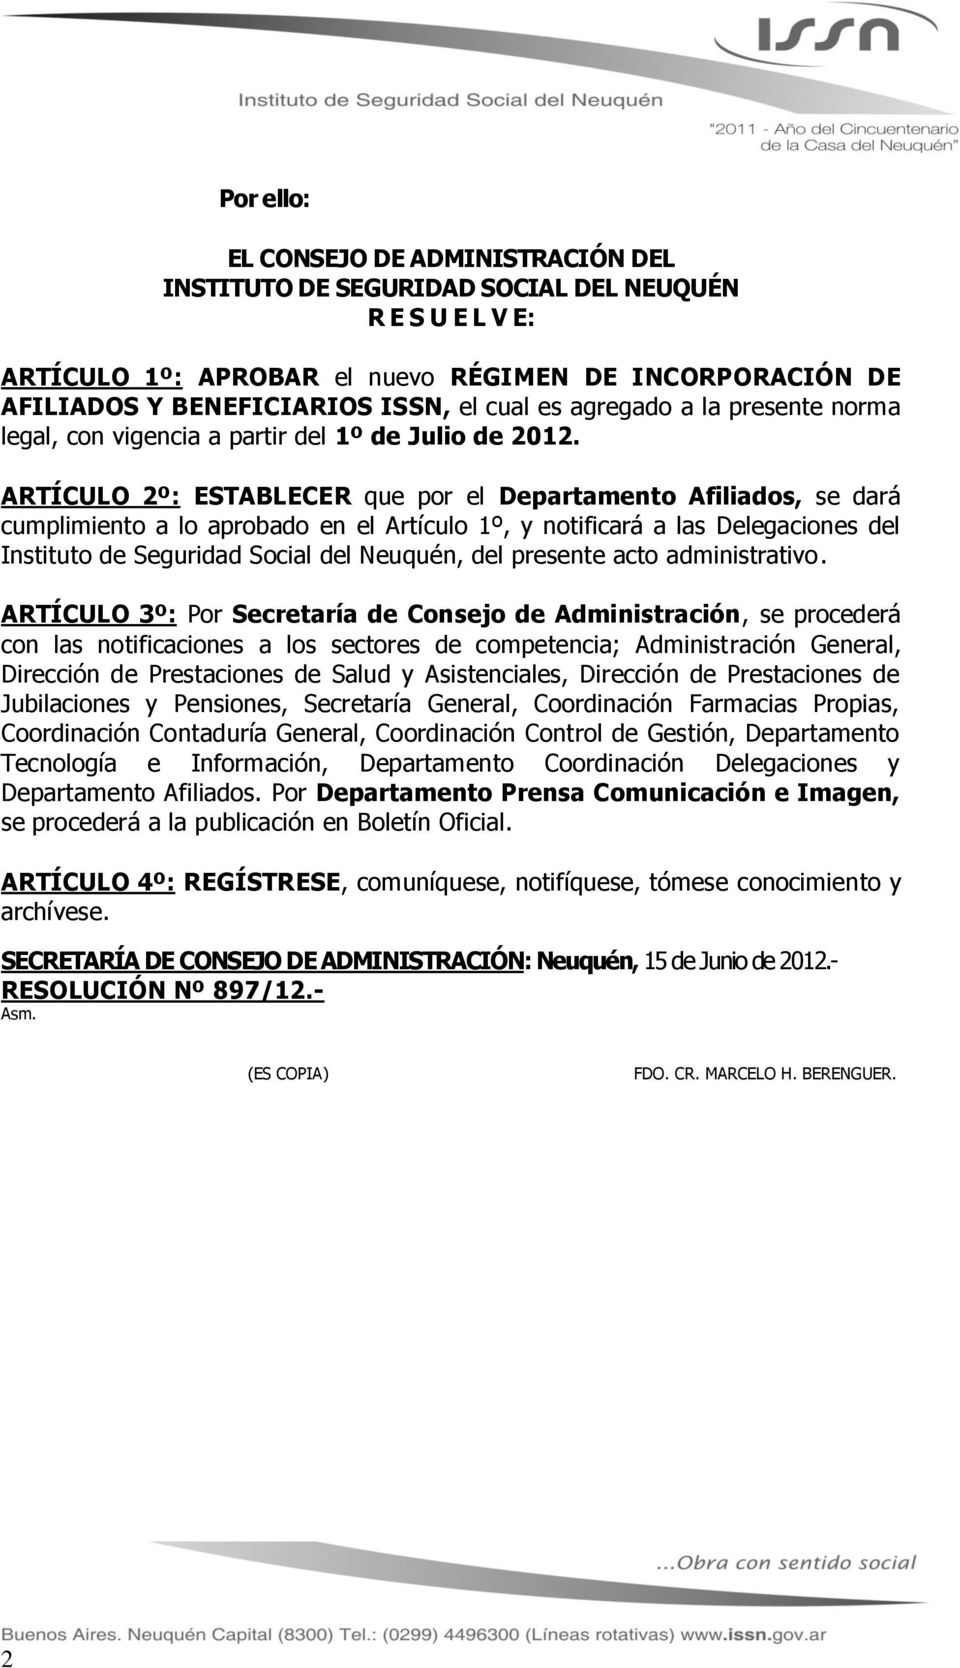 ARTÍCULO 2º: ESTABLECER que por el Departamento Afiliados, se dará cumplimiento a lo aprobado en el Artículo 1º, y notificará a las Delegaciones del Instituto de Seguridad Social del Neuquén, del